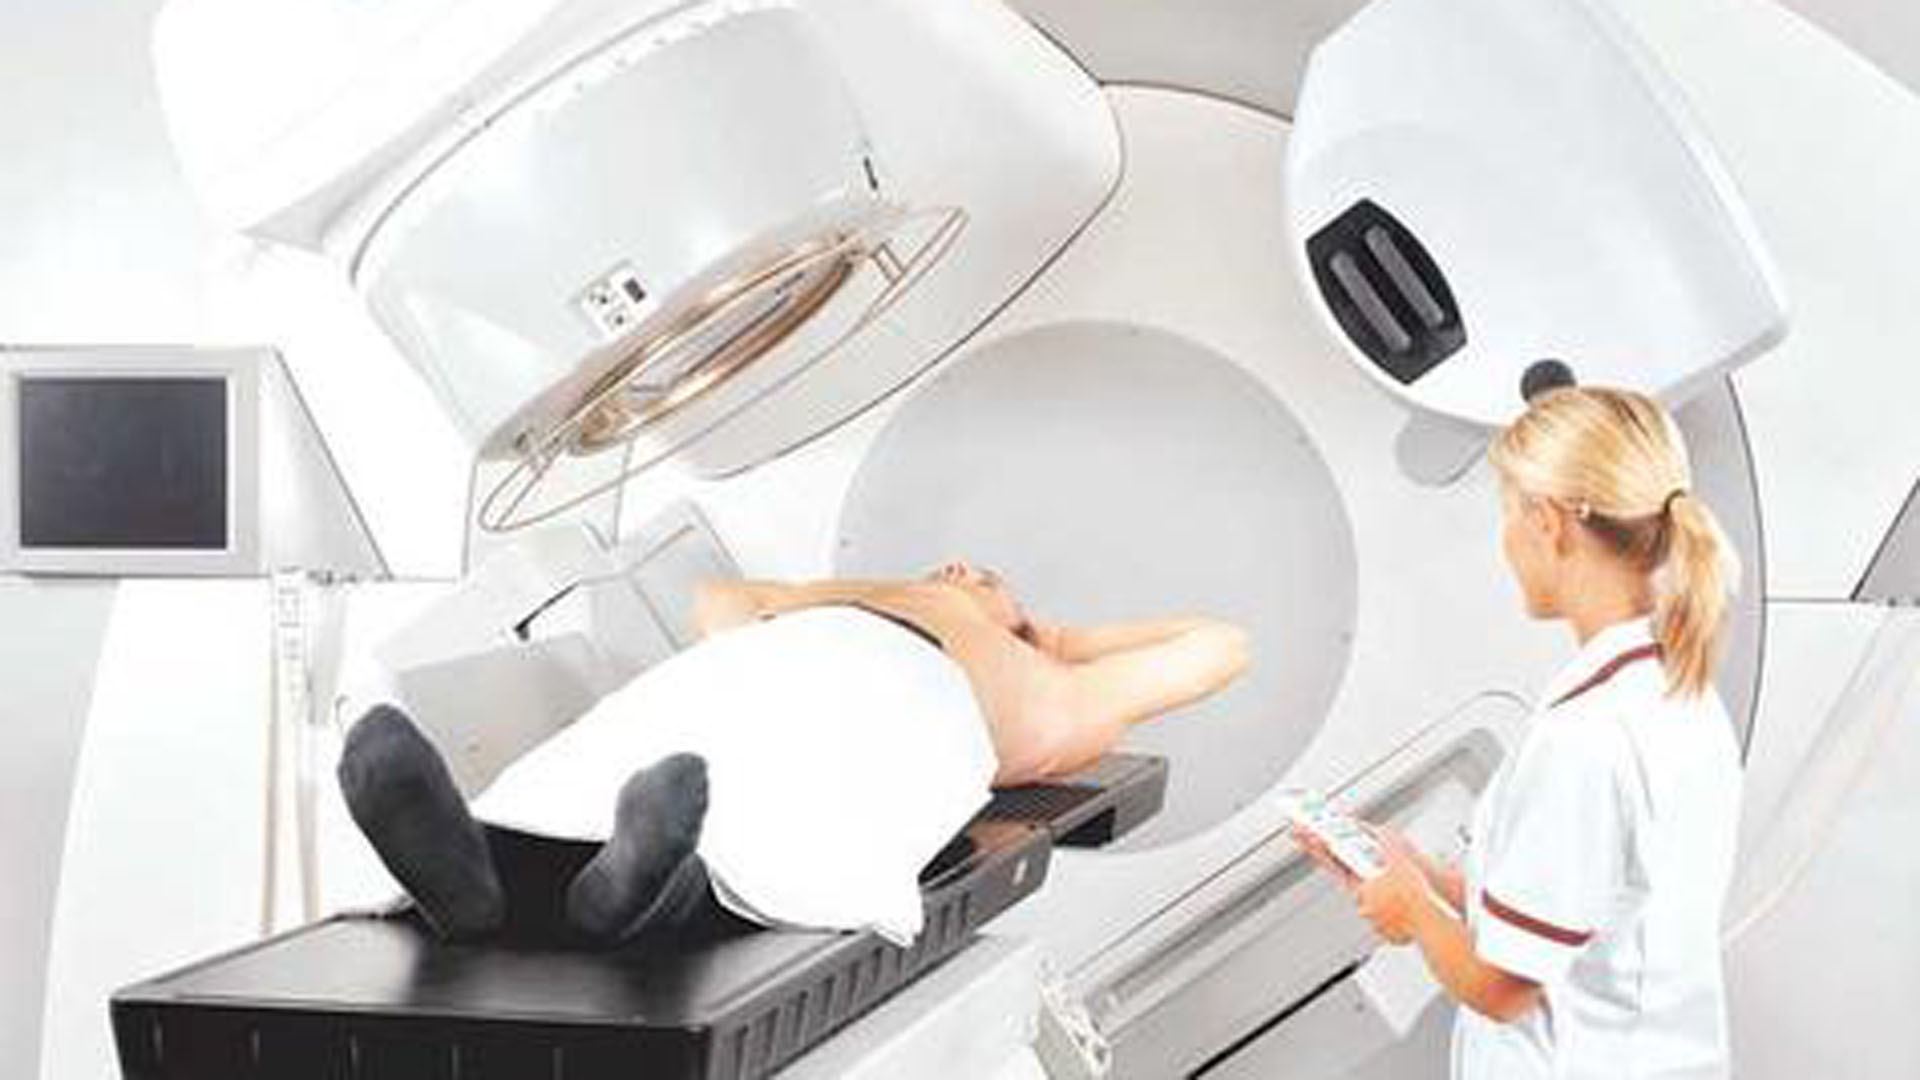 Los radioterapia se utiliza para destruir las células cancerosas y demorar el crecimiento del tumor sin dañar el tejido sano cercano